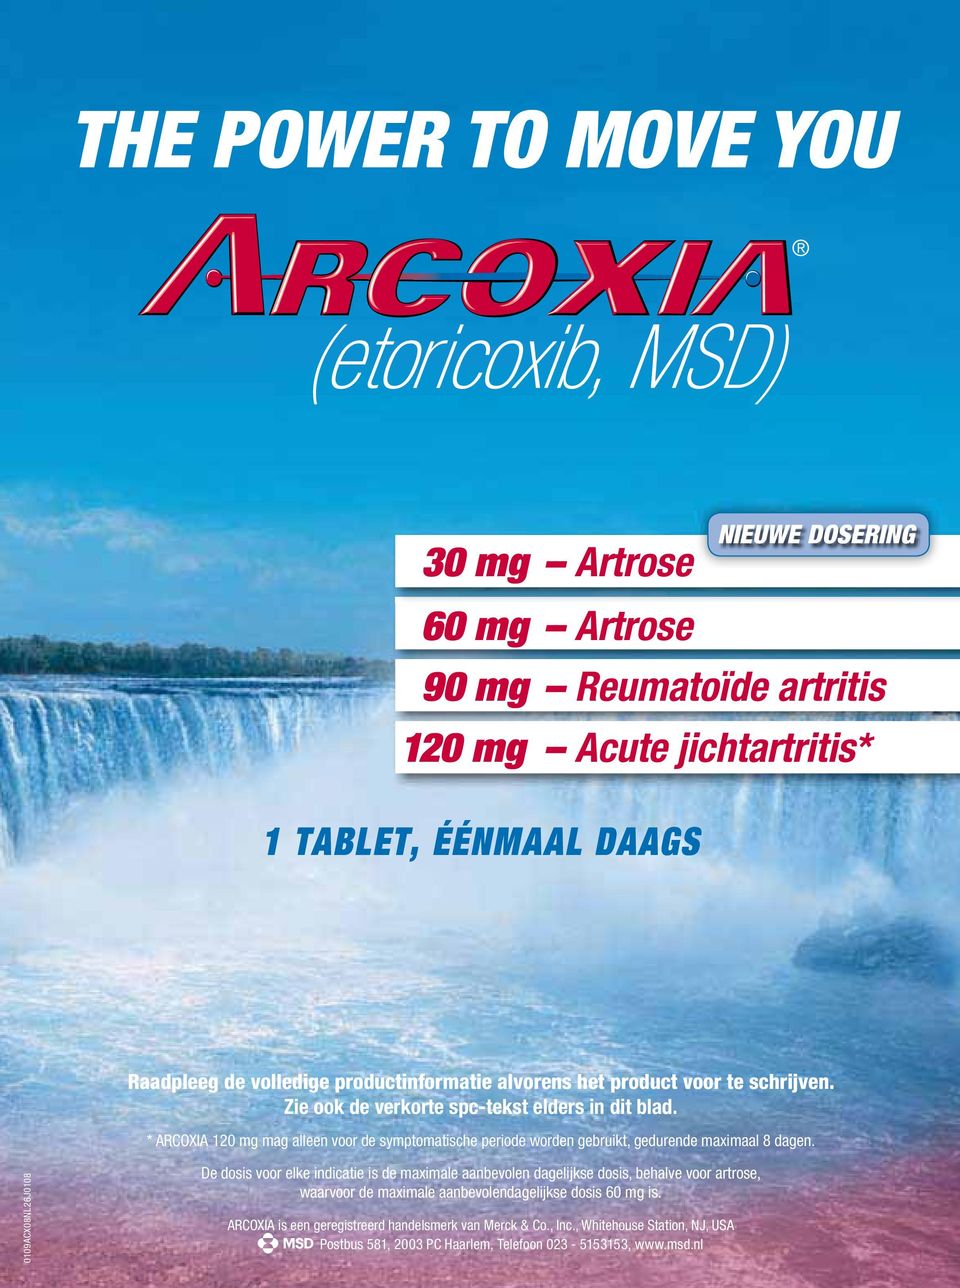 * ARCOXIA 120 mg mag alleen voor de symptomatische periode worden gebruikt, gedurende maximaal 8 dagen.